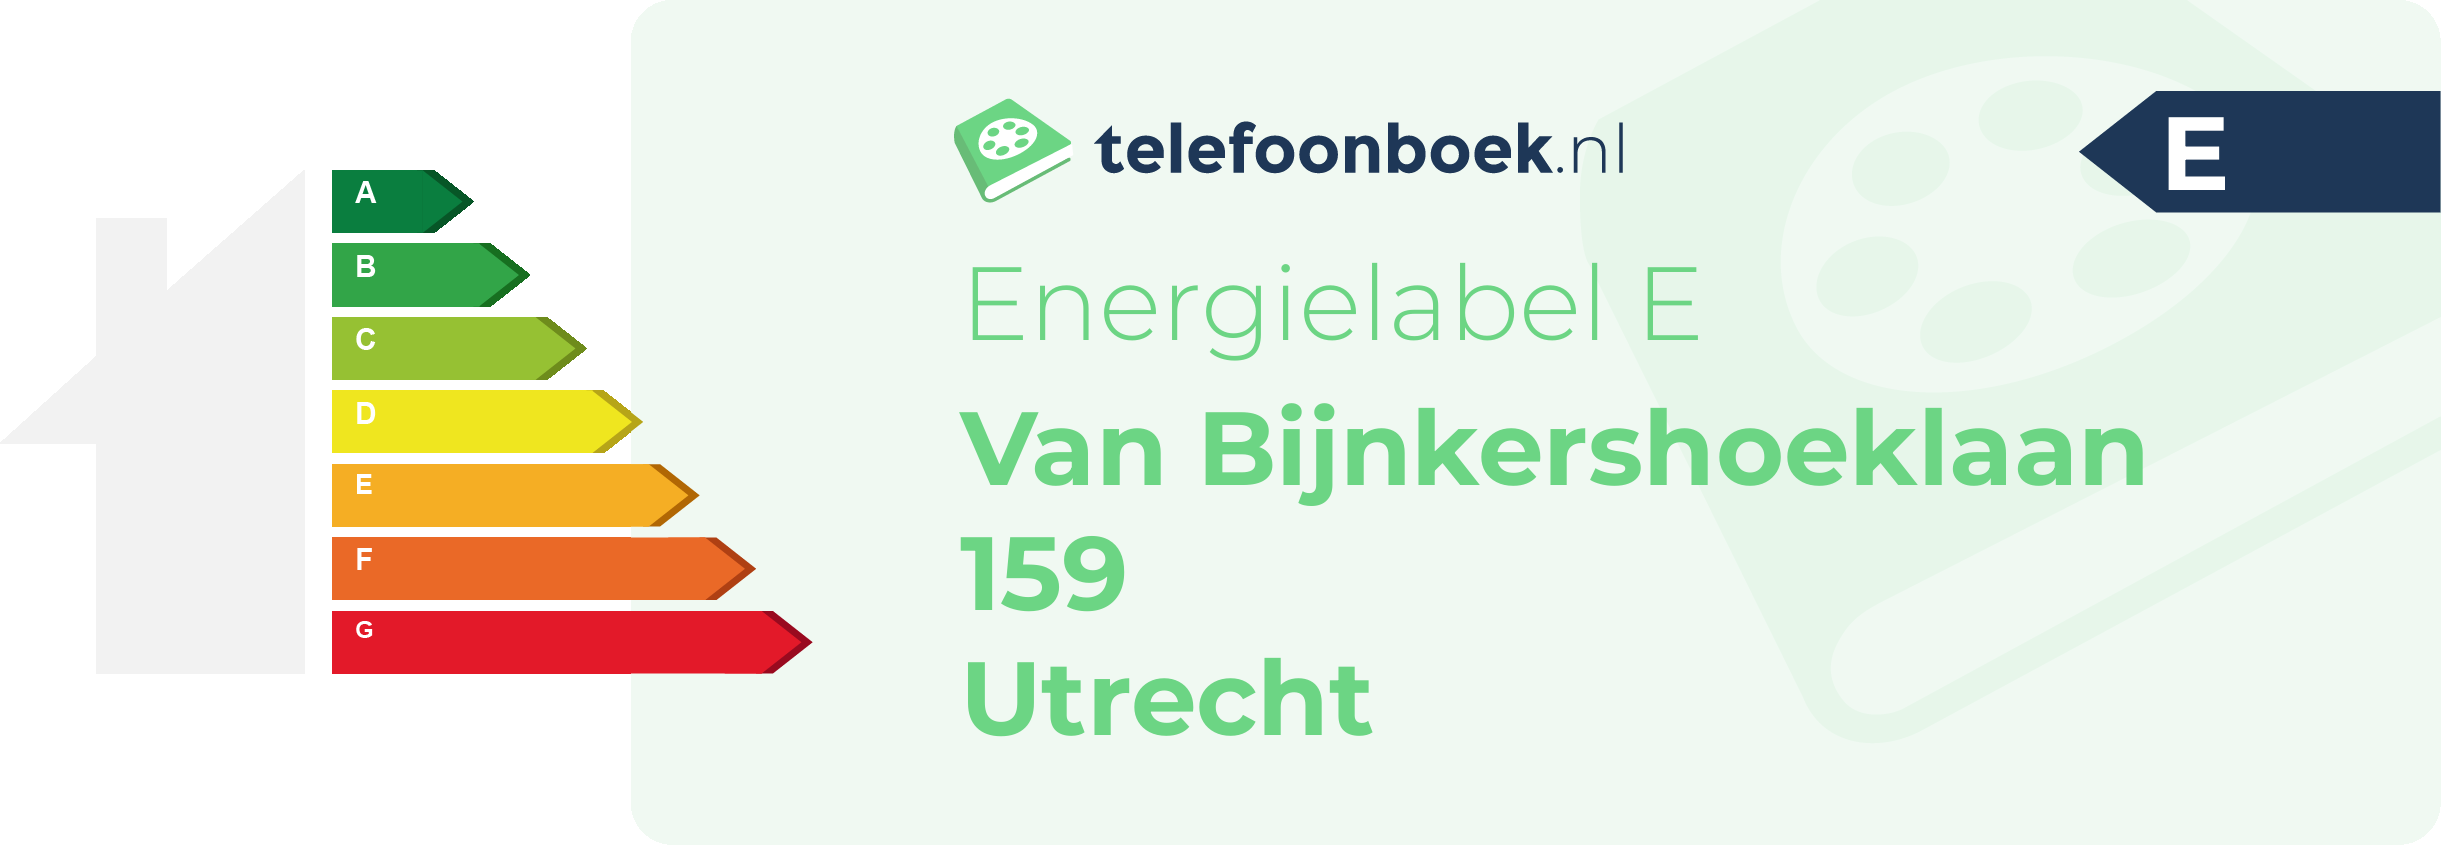 Energielabel Van Bijnkershoeklaan 159 Utrecht